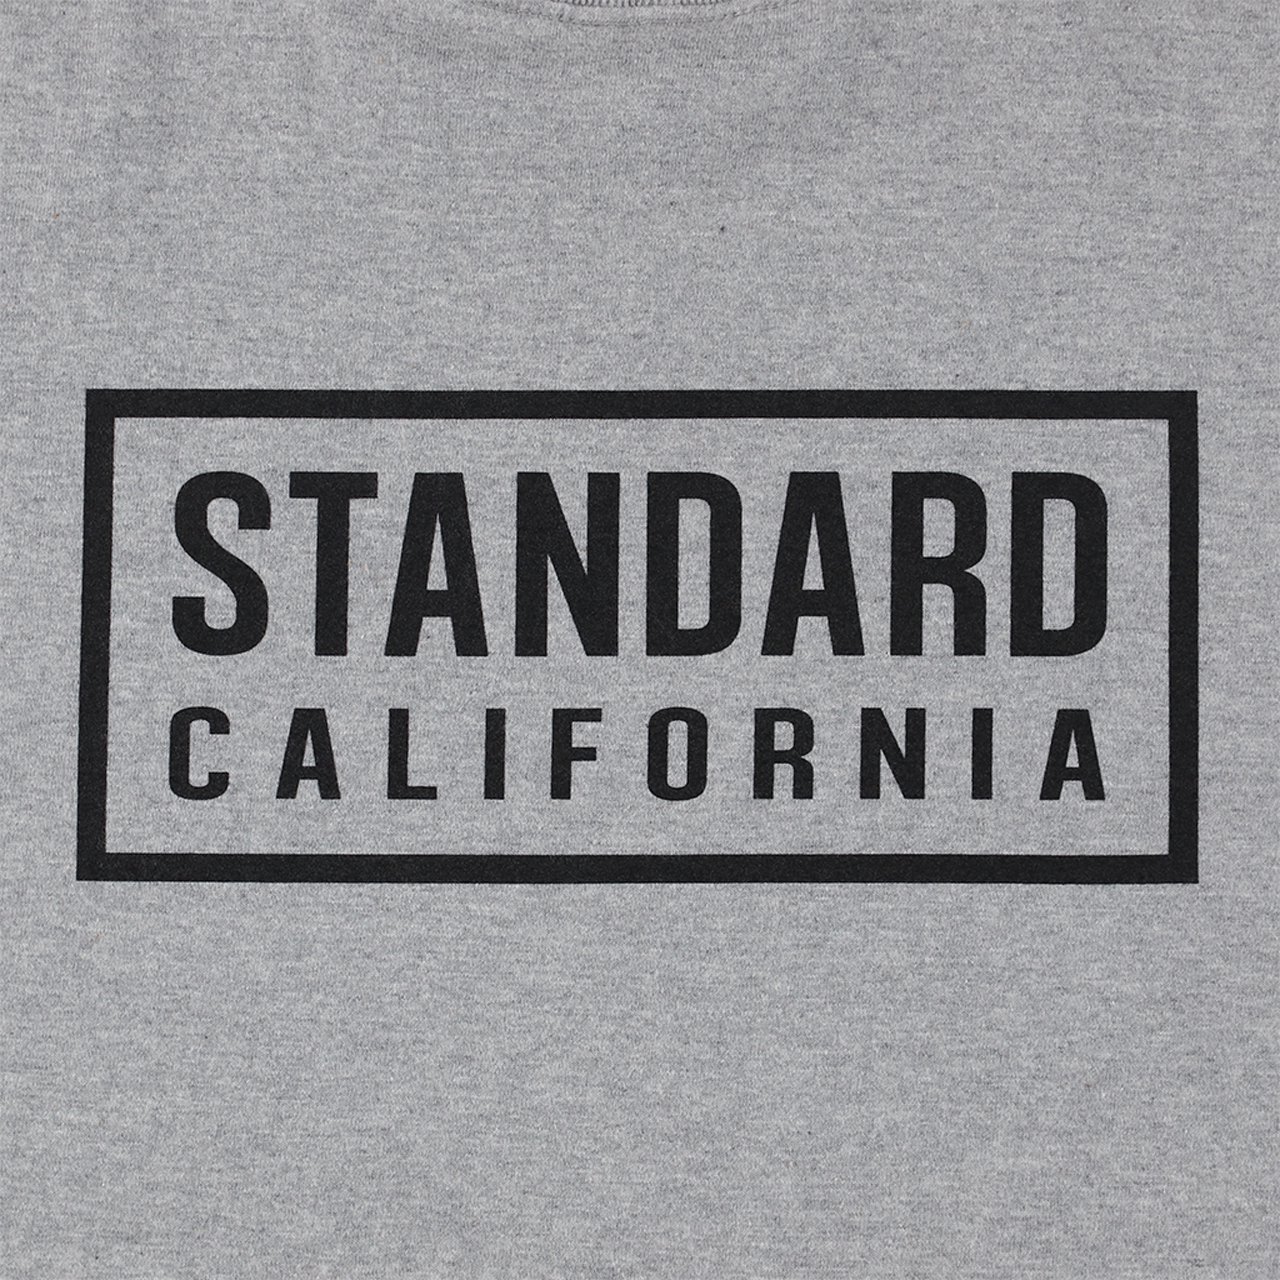 STANDARD CALIFORNIA(スタンダードカリフォルニア)24SS/春夏
Heavyweight Box Logo Tee
ヘビーウェイトボックスロゴTee
半袖Tシャツ
TSOAK090
定番